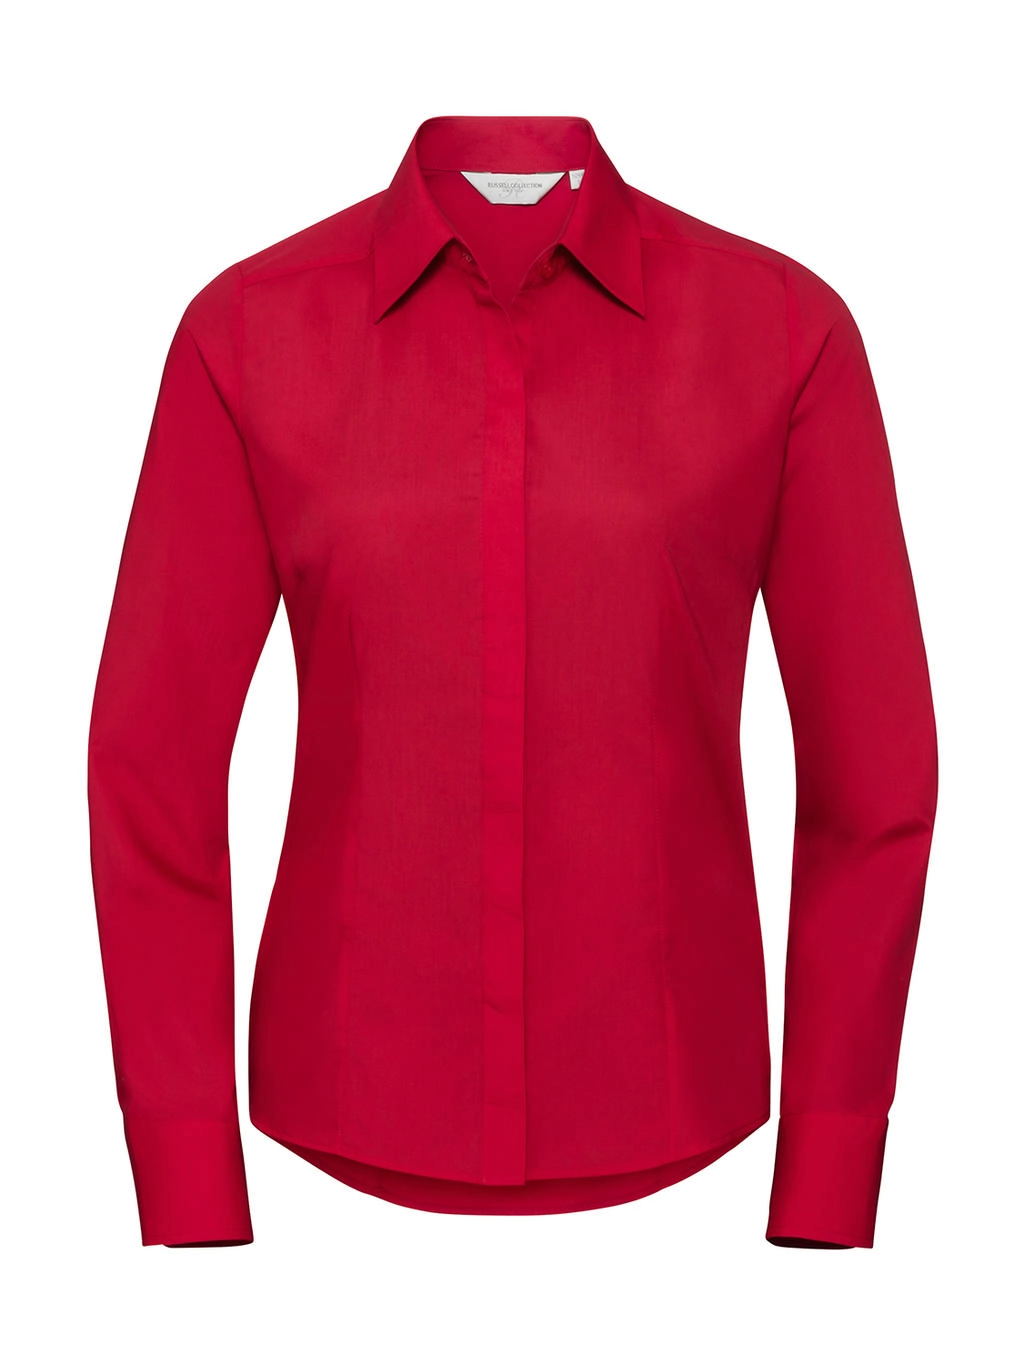 Ladies` LS Fitted Poplin Shirt zum Besticken und Bedrucken in der Farbe Classic Red mit Ihren Logo, Schriftzug oder Motiv.